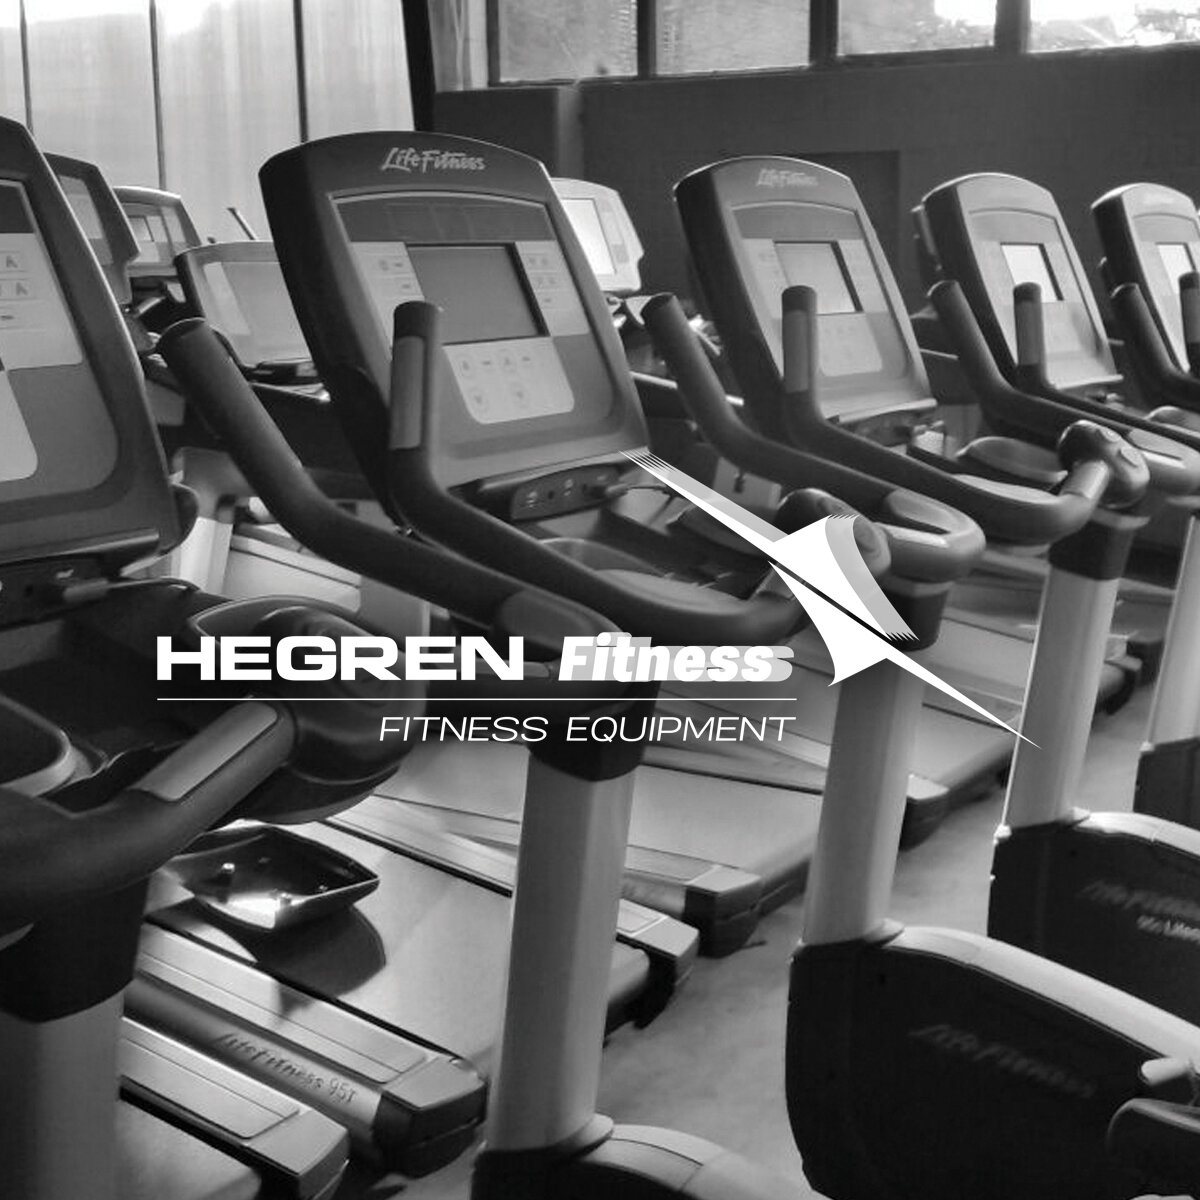 hegren-fitness-image_logo-1200x1200.jpg